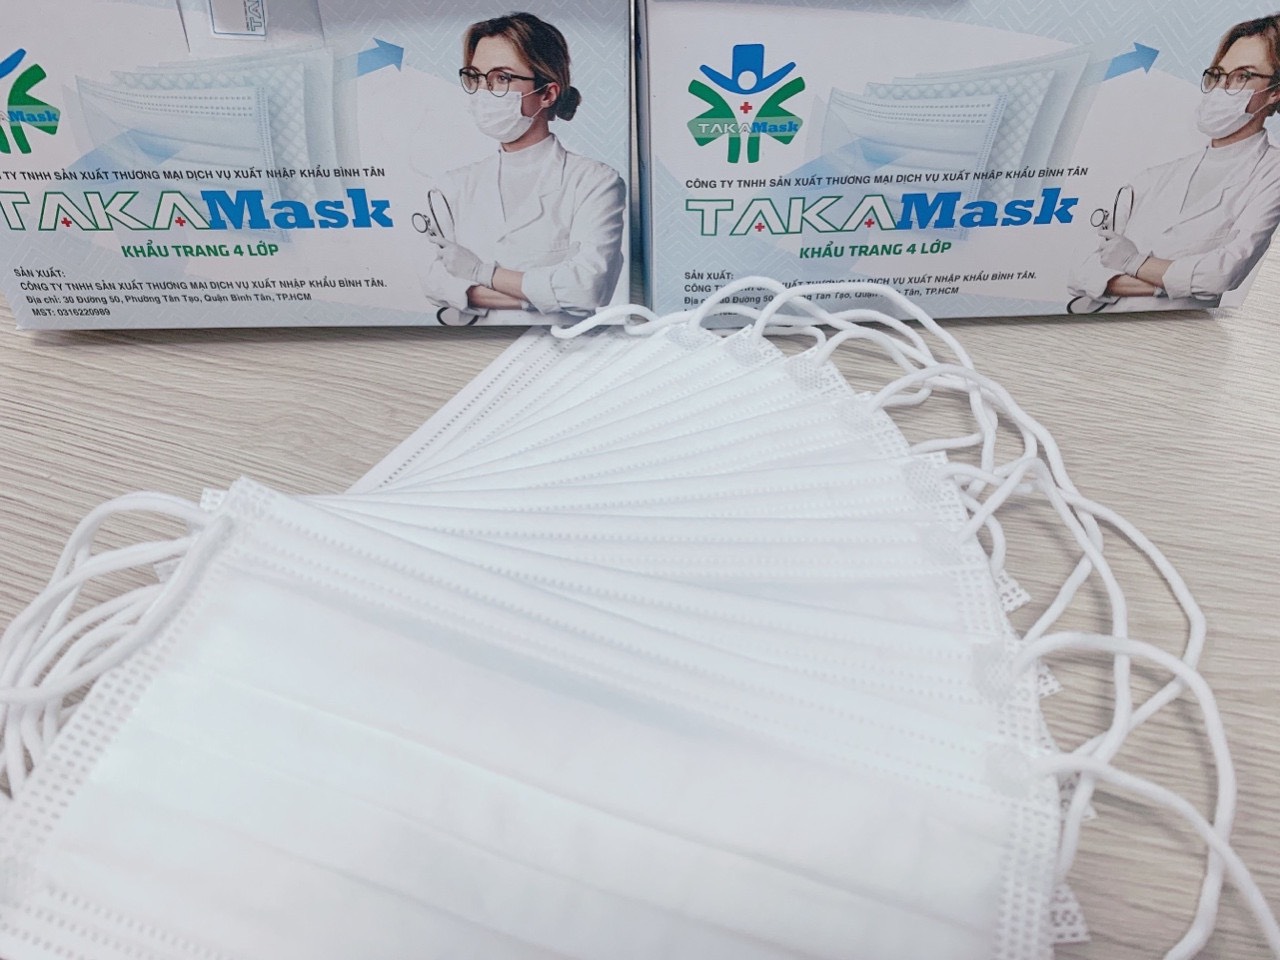 Takamask Medical Mask